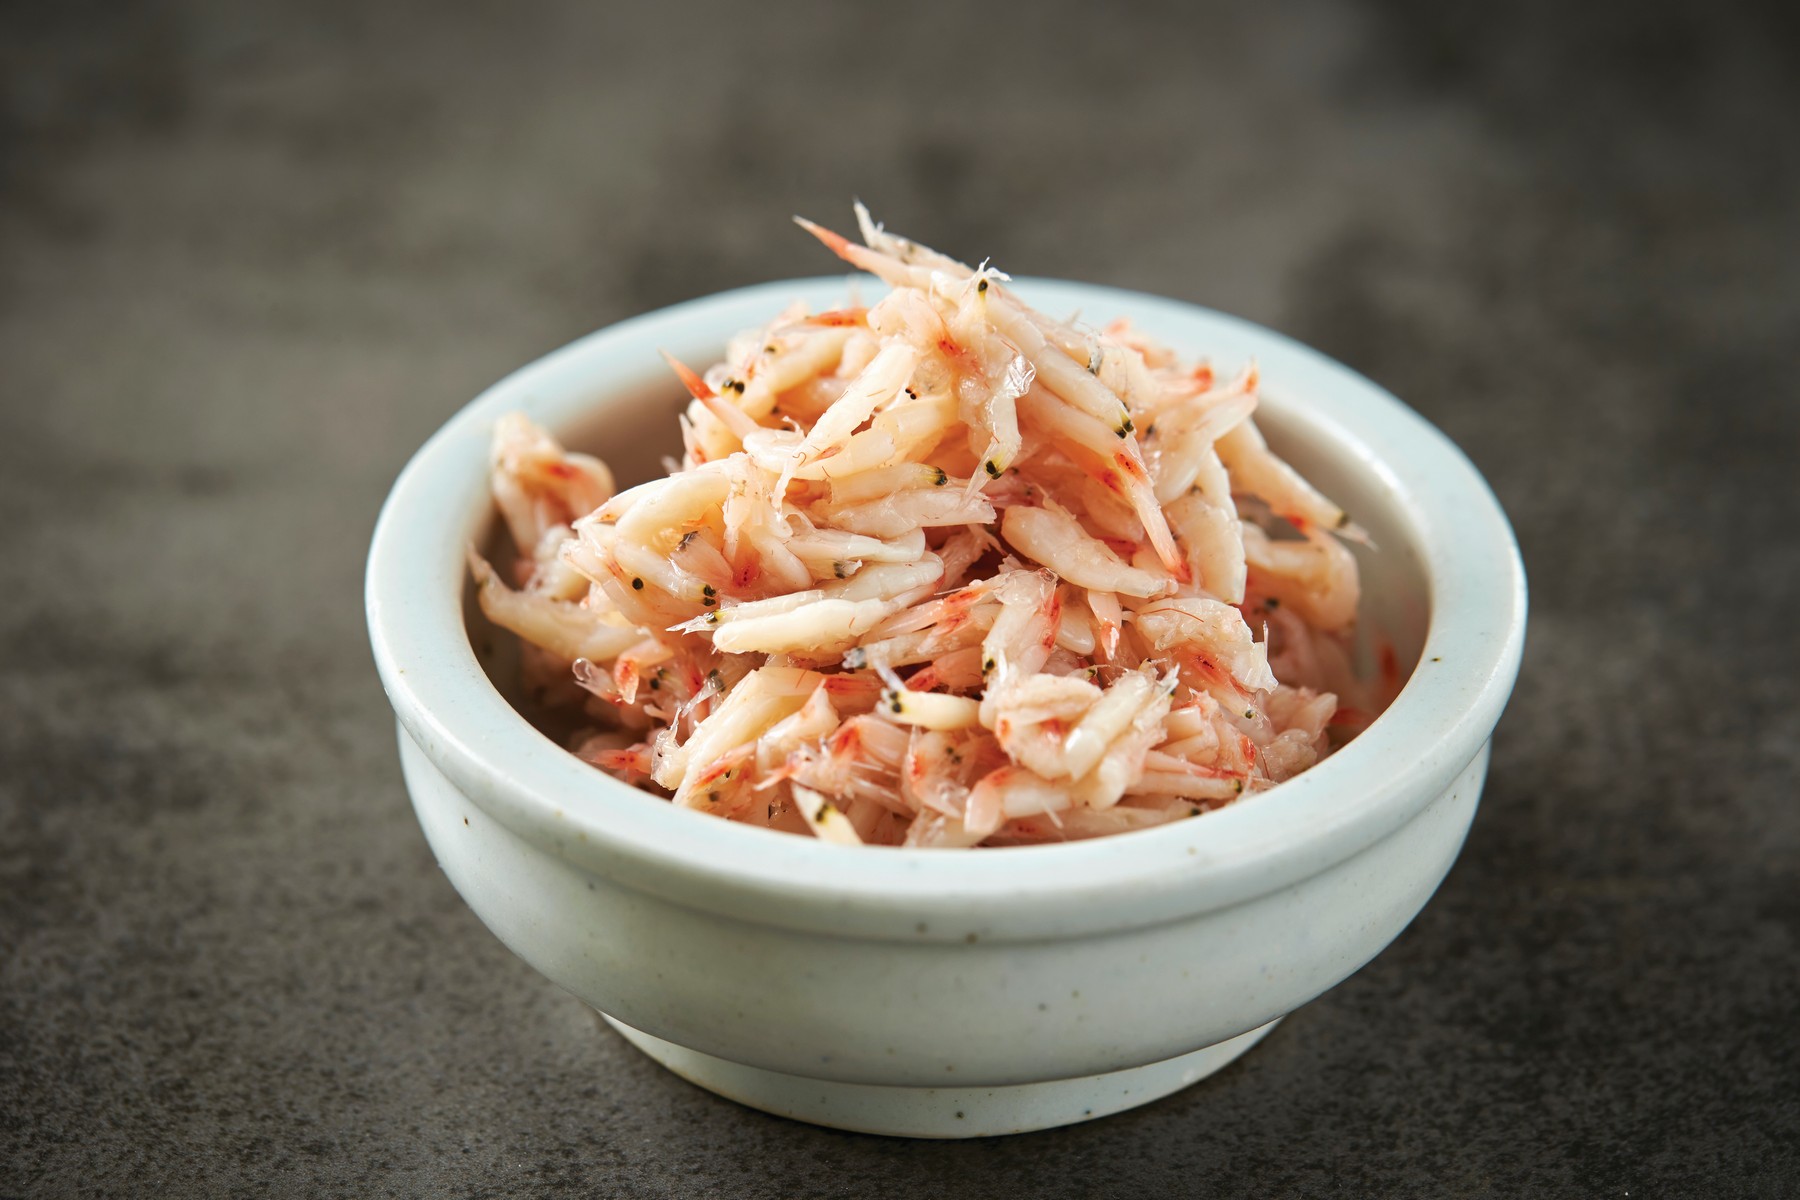 Di antara jenis ikan asin, udang asin adalah makanan yang dibuat dari udang yang difermentasi dengan garam dan merupakan jenis ikan asin yang sering digunakan bersama ikan teri. Udang asin digunakan dalam membuat berbagai masakan Korea, terutama untuk membuat kimci dengan aroma dan rasa yang nikmat.